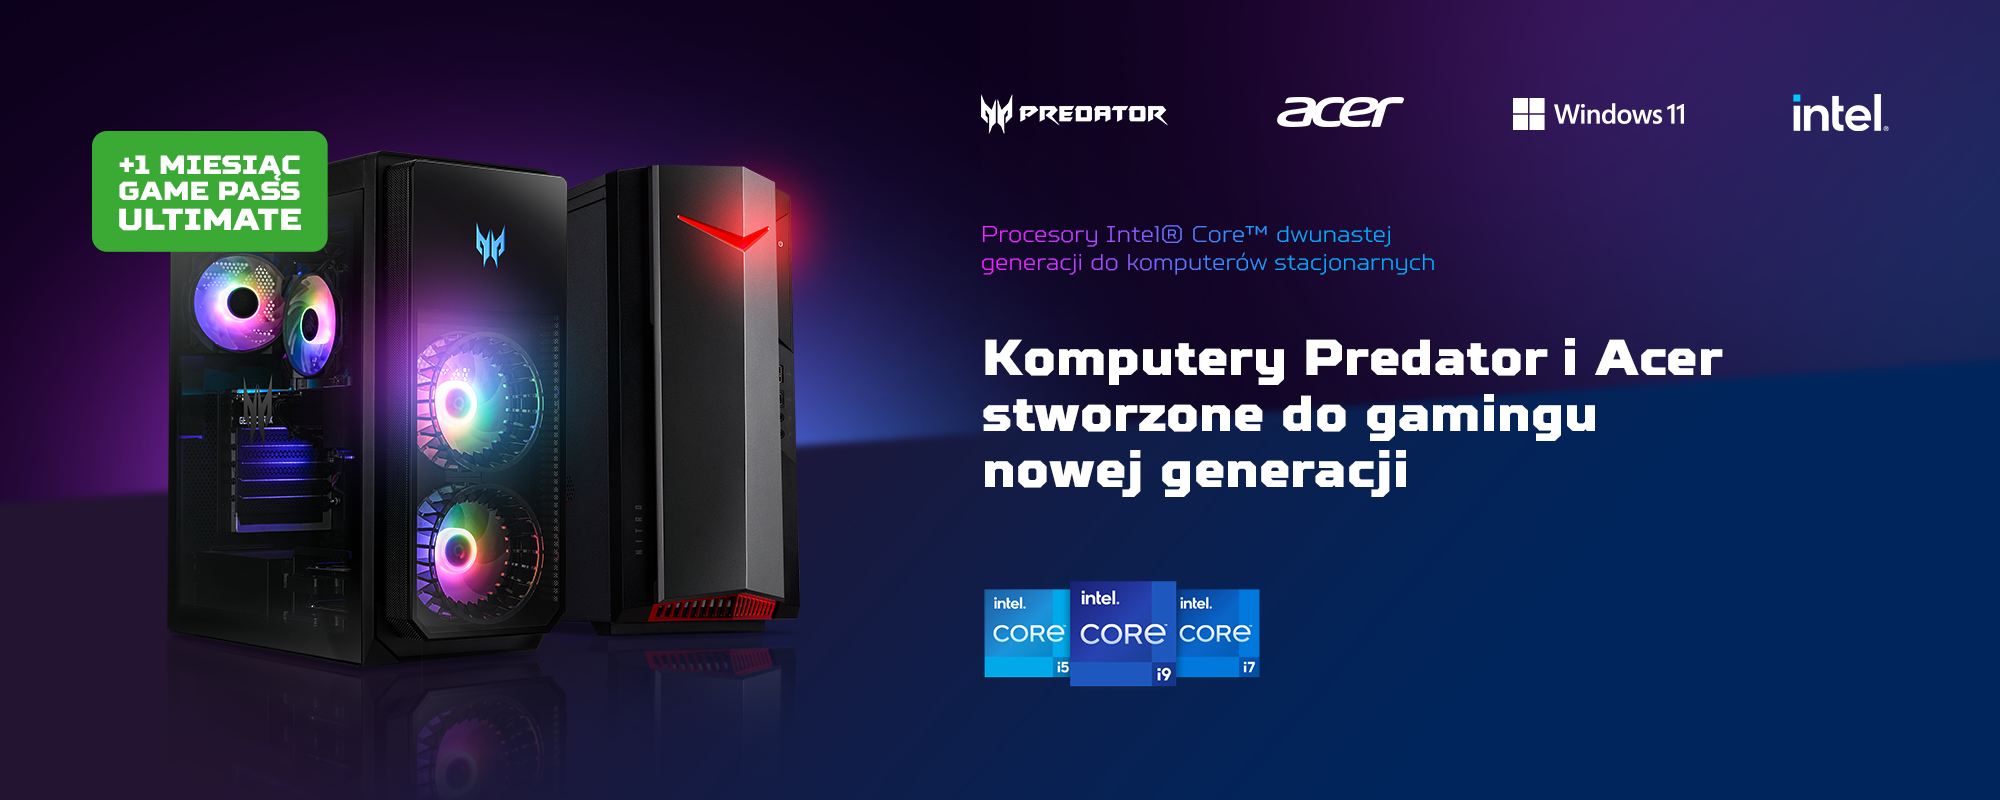 PC Predator & Acer stworzone do gamingu nowej generacji